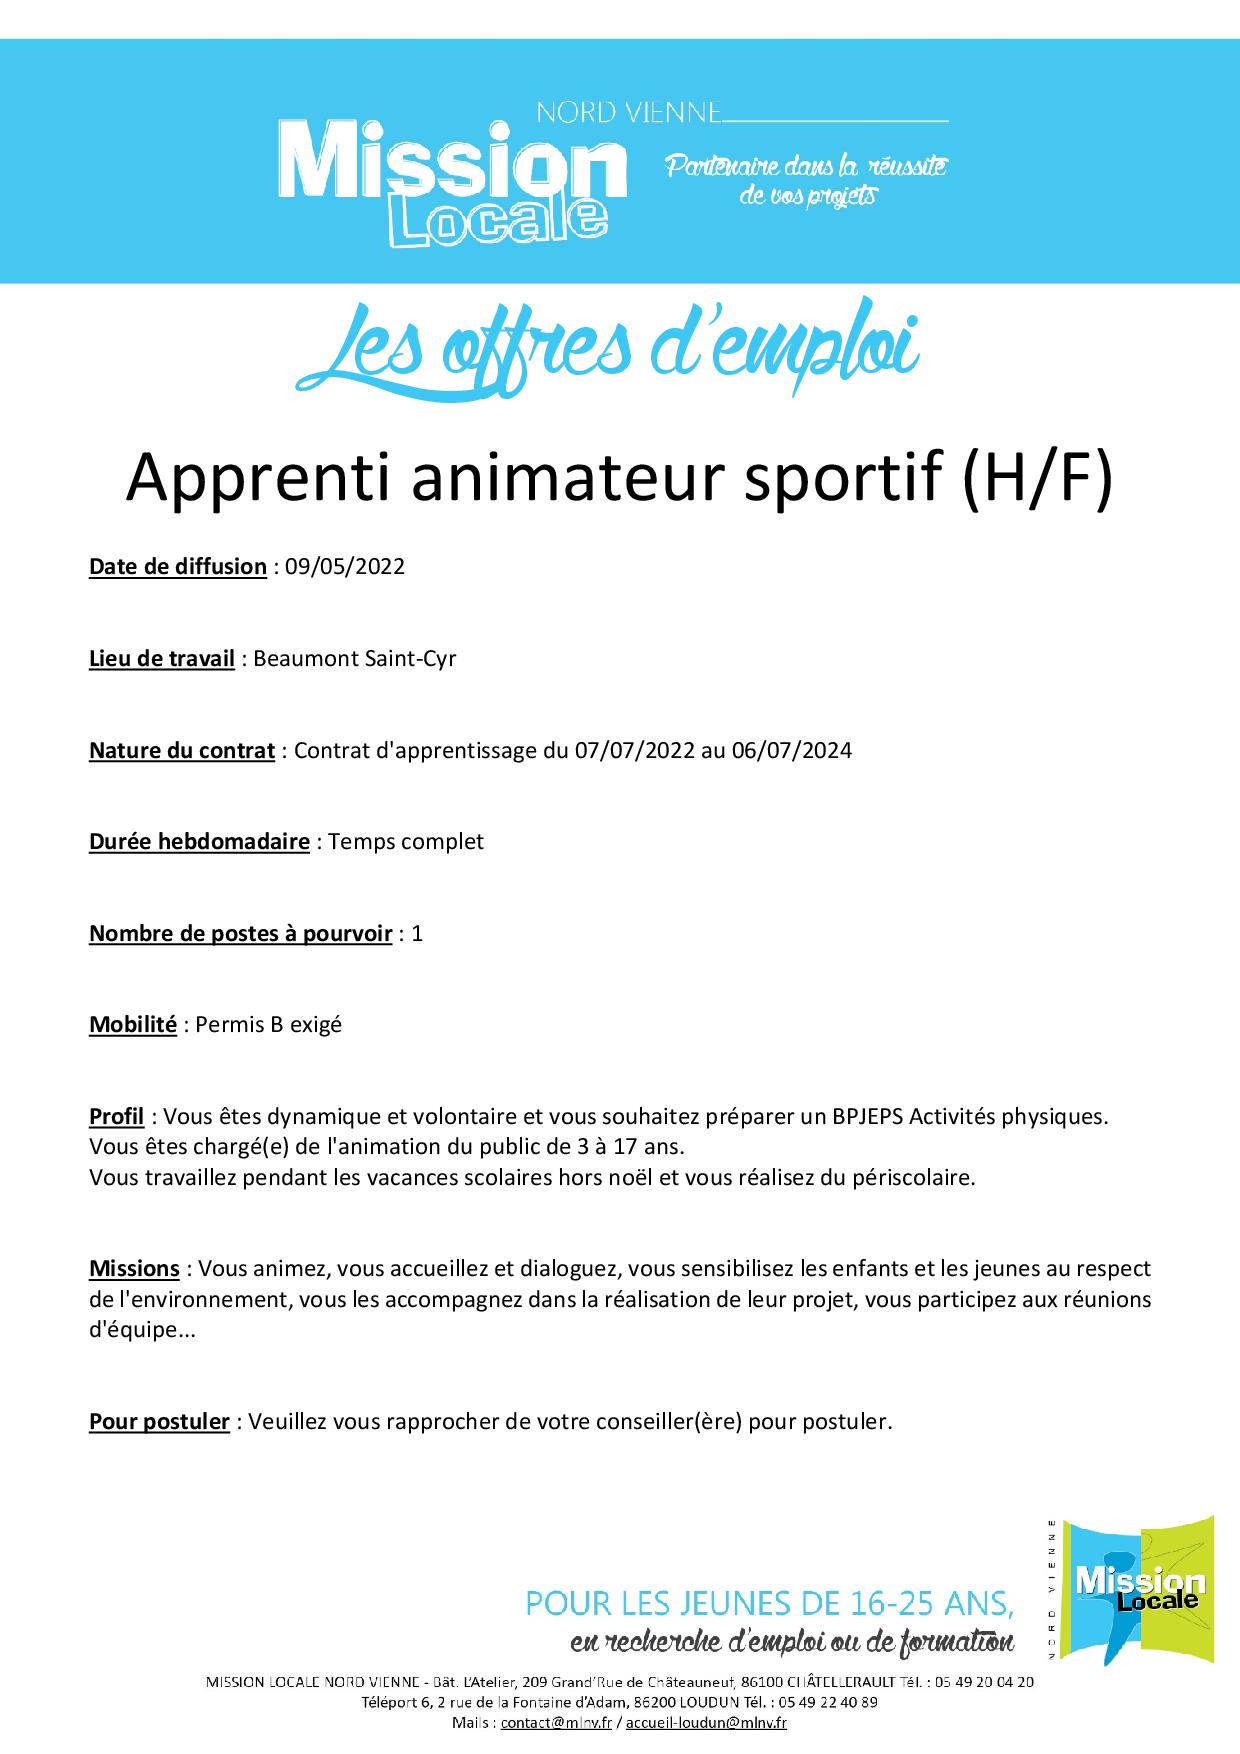 Apprenti animateur sportif (H/F)